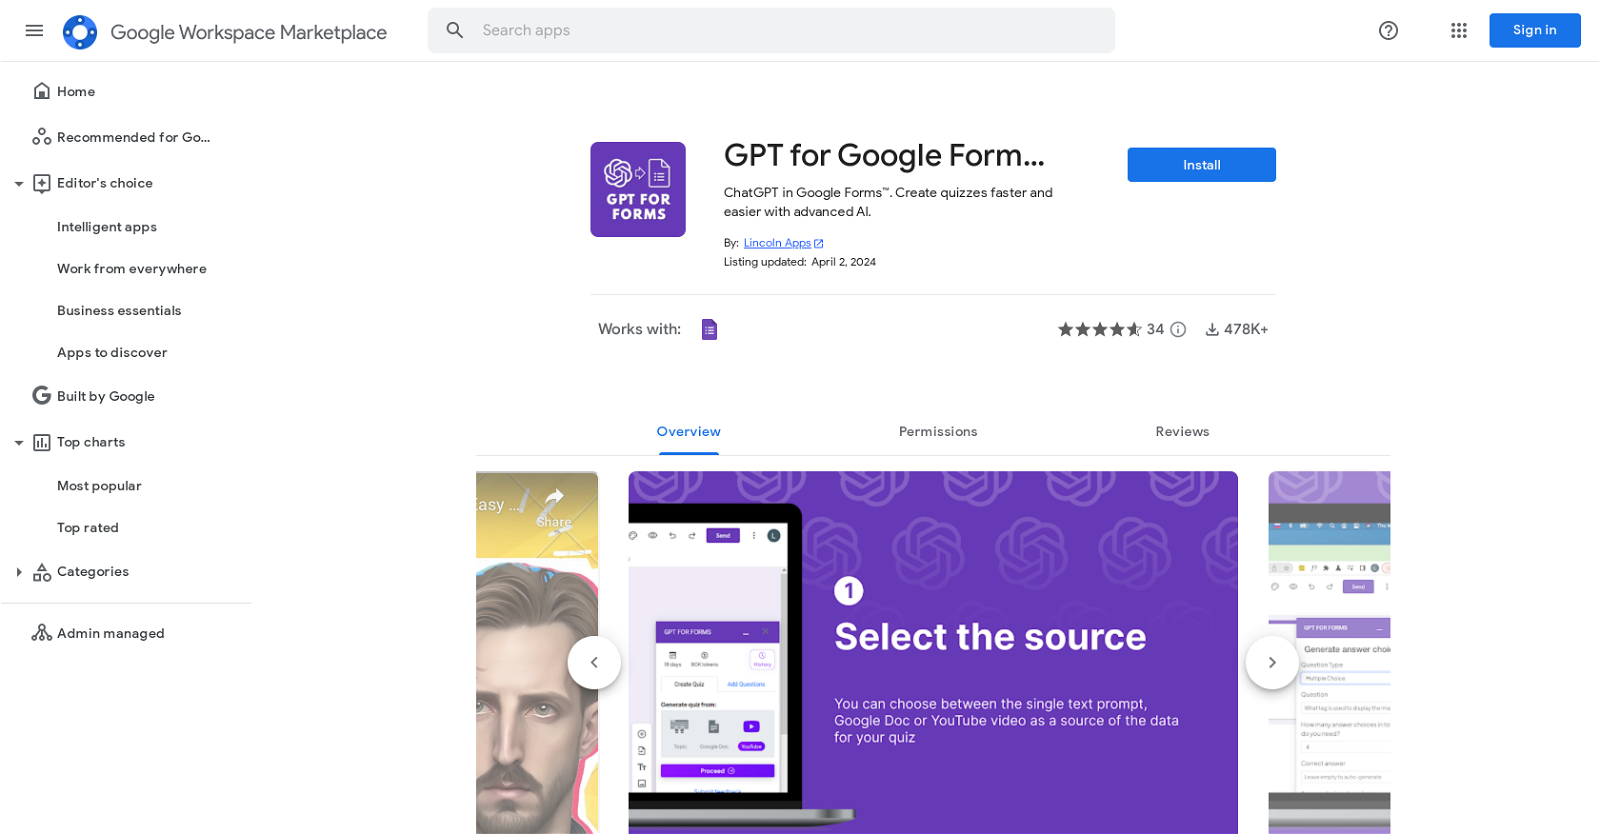 GPT for Google Forms website